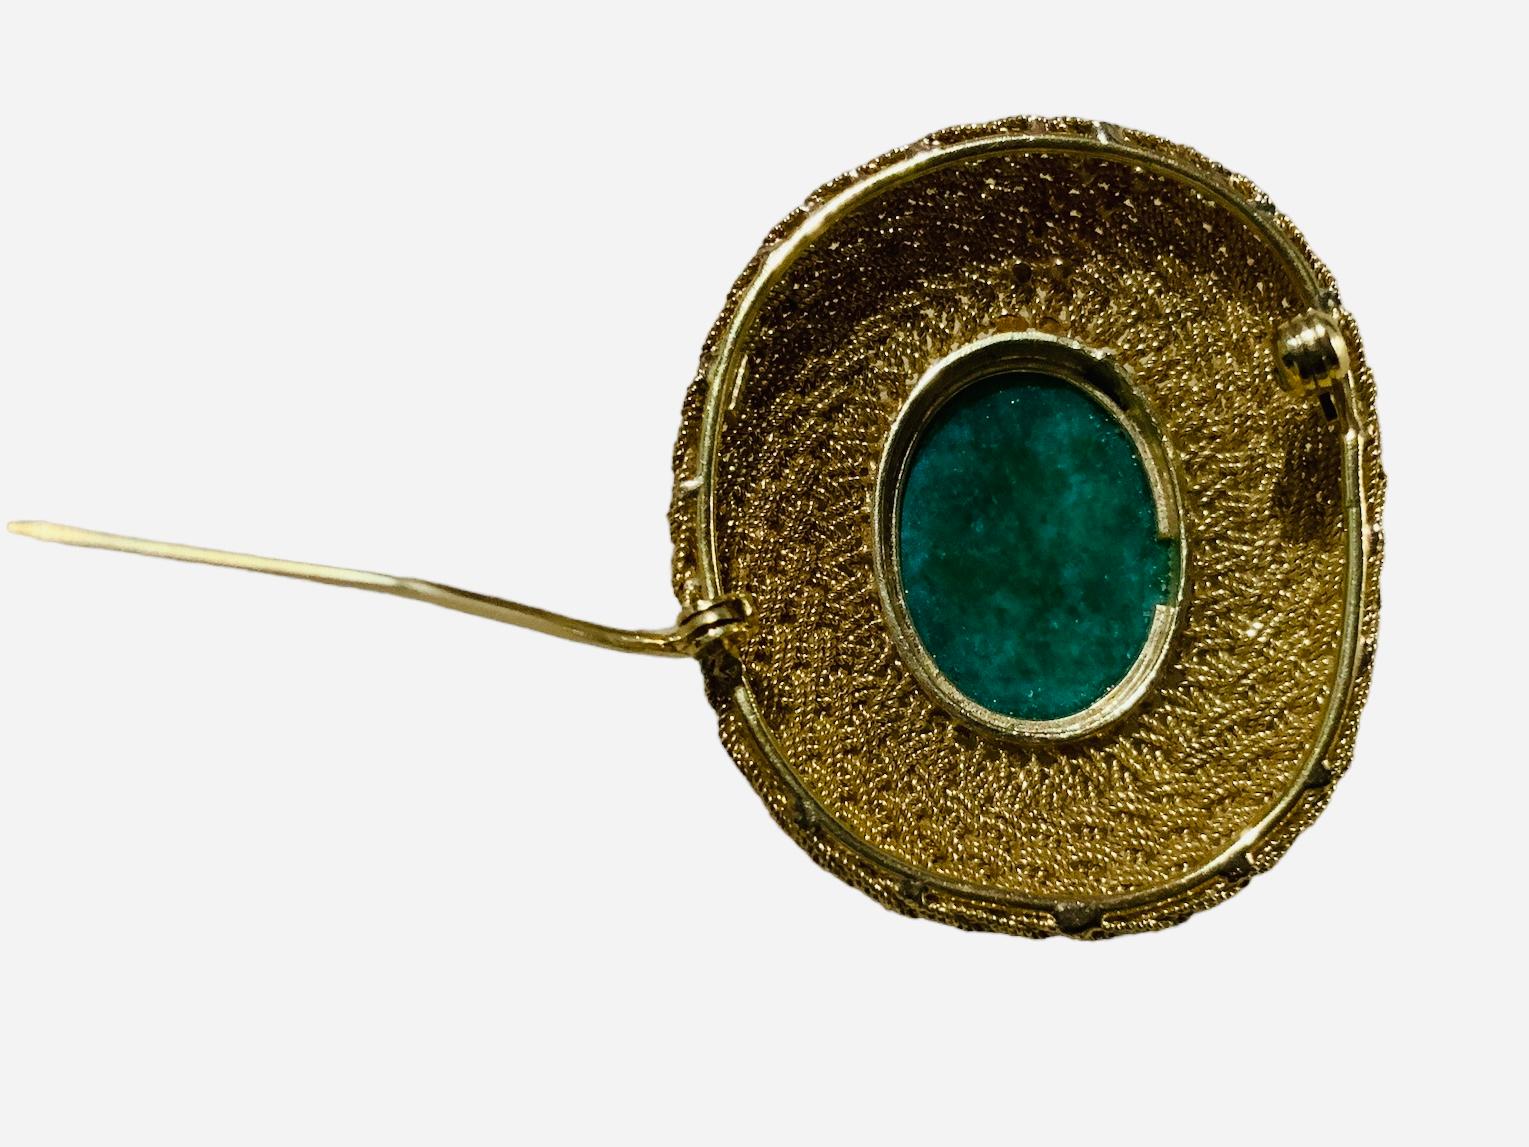 Dies ist eine 18K Gelbgold Jade Brosche. Sie zeigt einen ovalen Jade-Cabochon, der in eine goldene Brosche in Lünettenfassung gefasst und mit dünnen, aus Gold geflochtenen Seilen geschmückt ist. Sie wird mit einem C-Verschluss auf der Rückseite